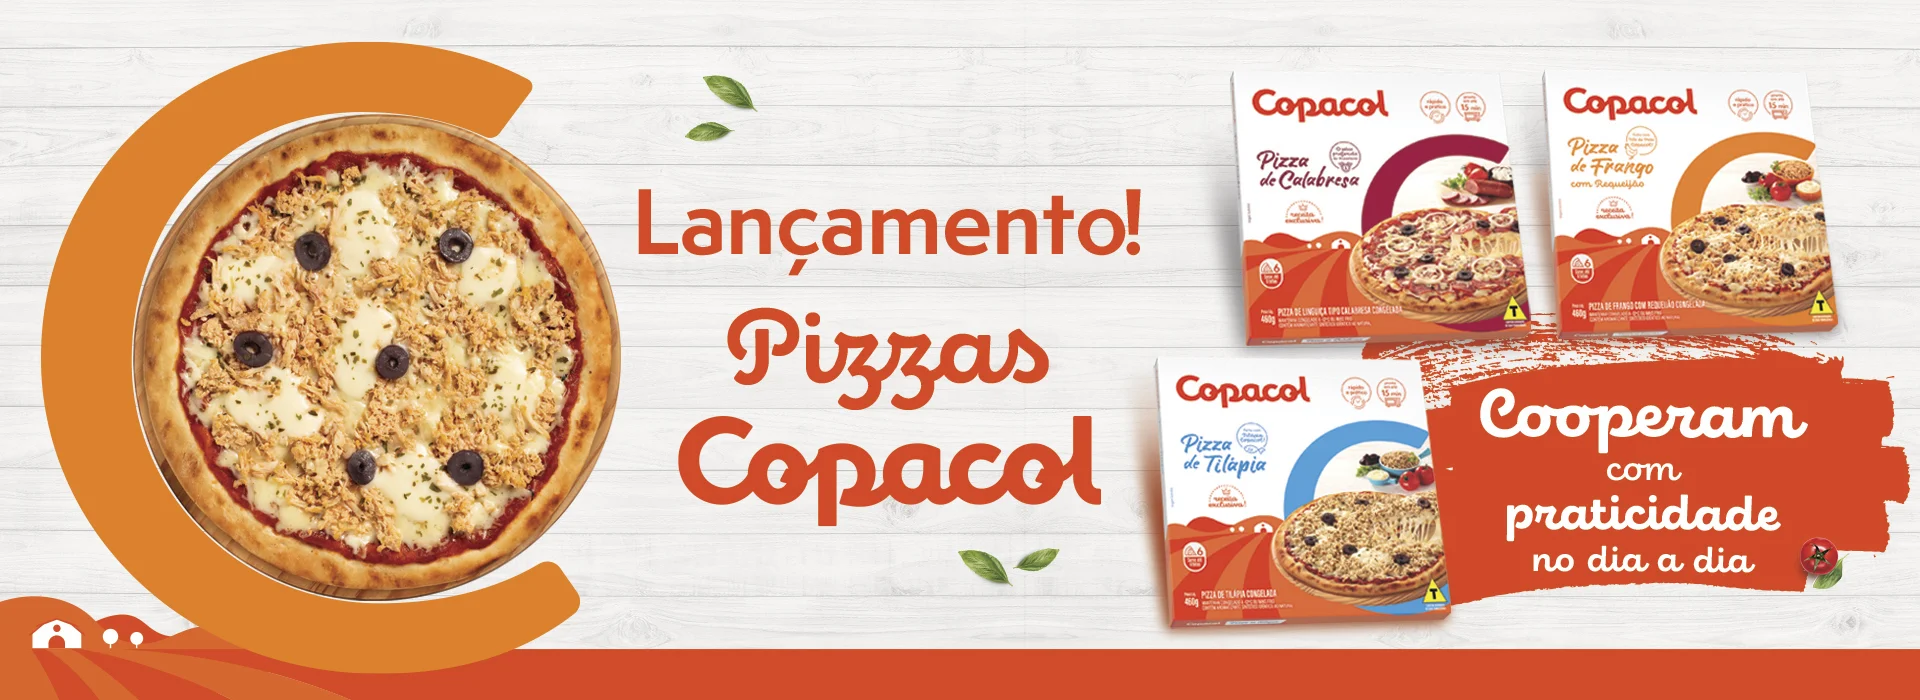 Lançamento Pizzas Copacol - Clique aqui e saiba mais